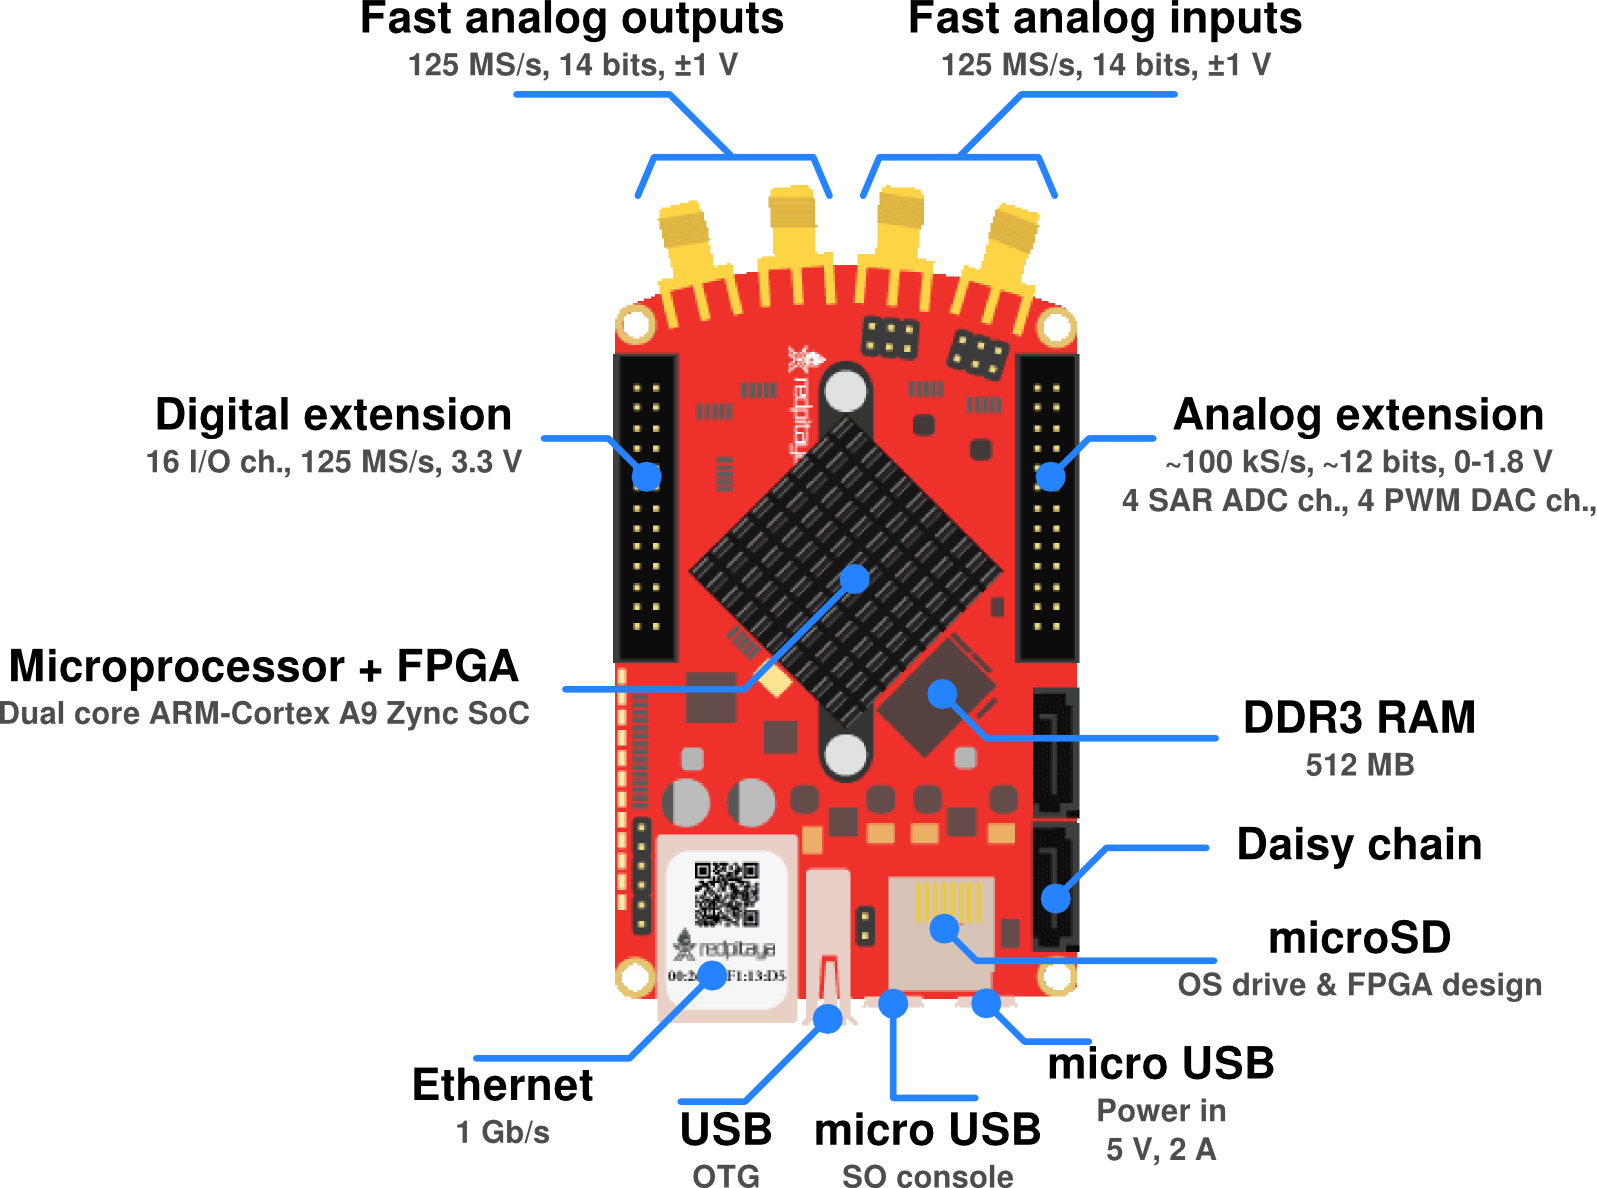 Red Pitaya 125-14. Red Pitaya Ethernet GPIO. Red Pitaya схема. Red Pitaya SDR Transceiver. Аналог фаст